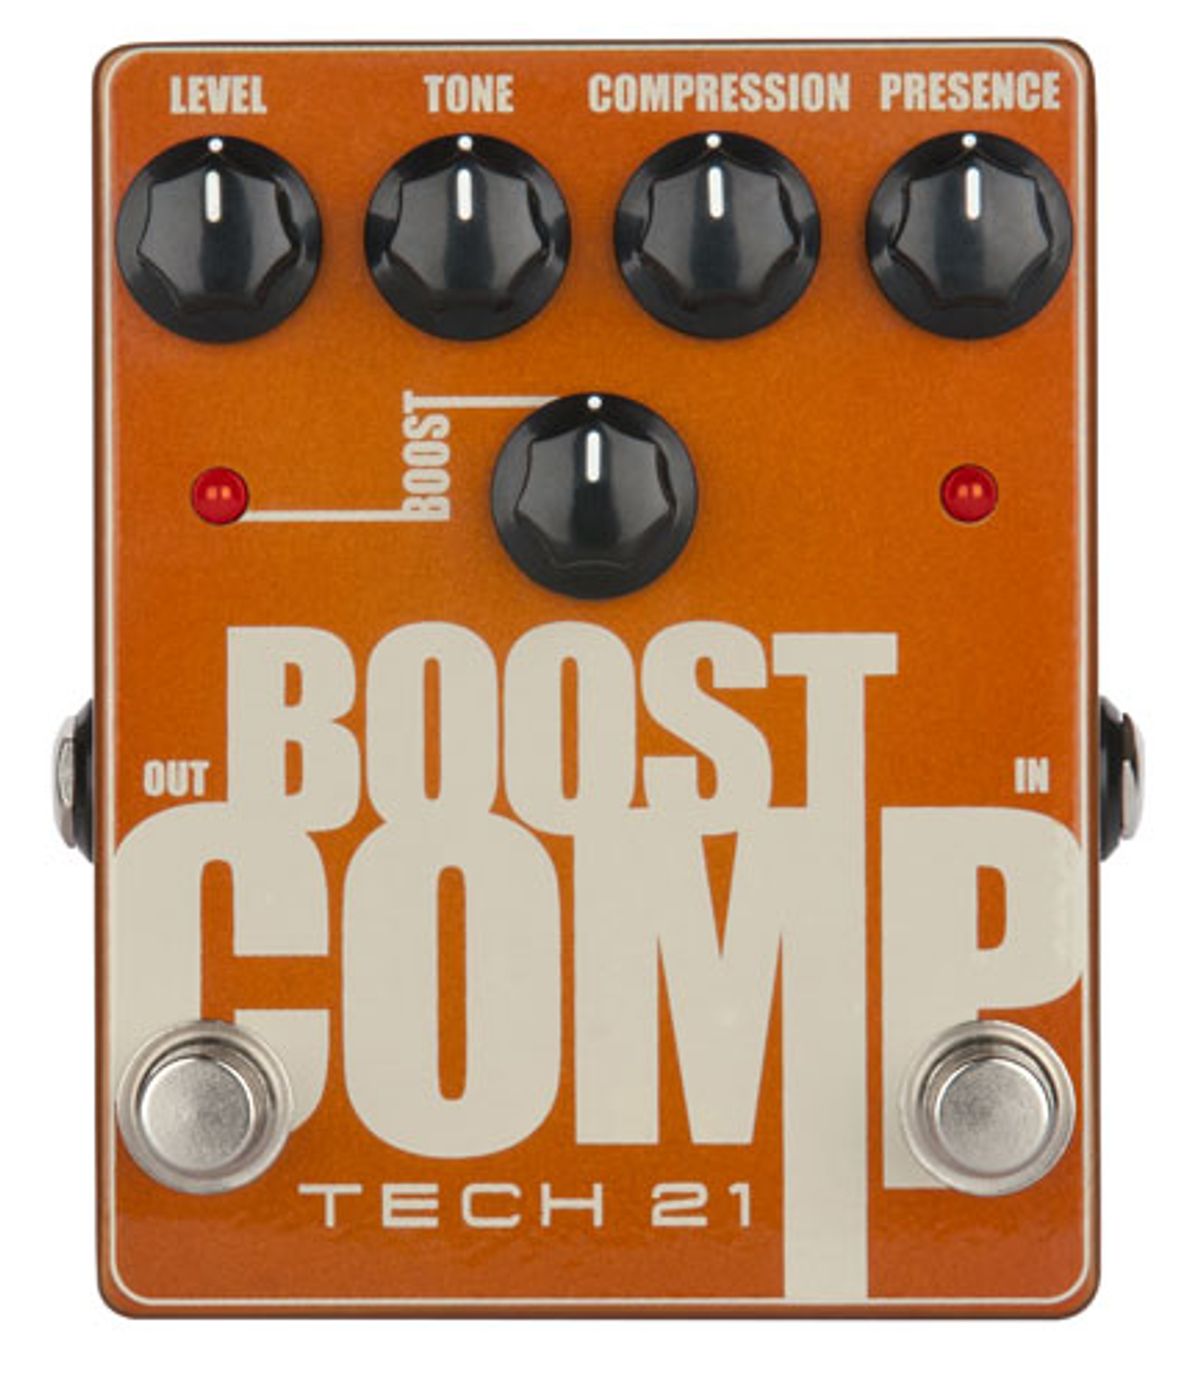 Tech 21 Announces the Boost Comp